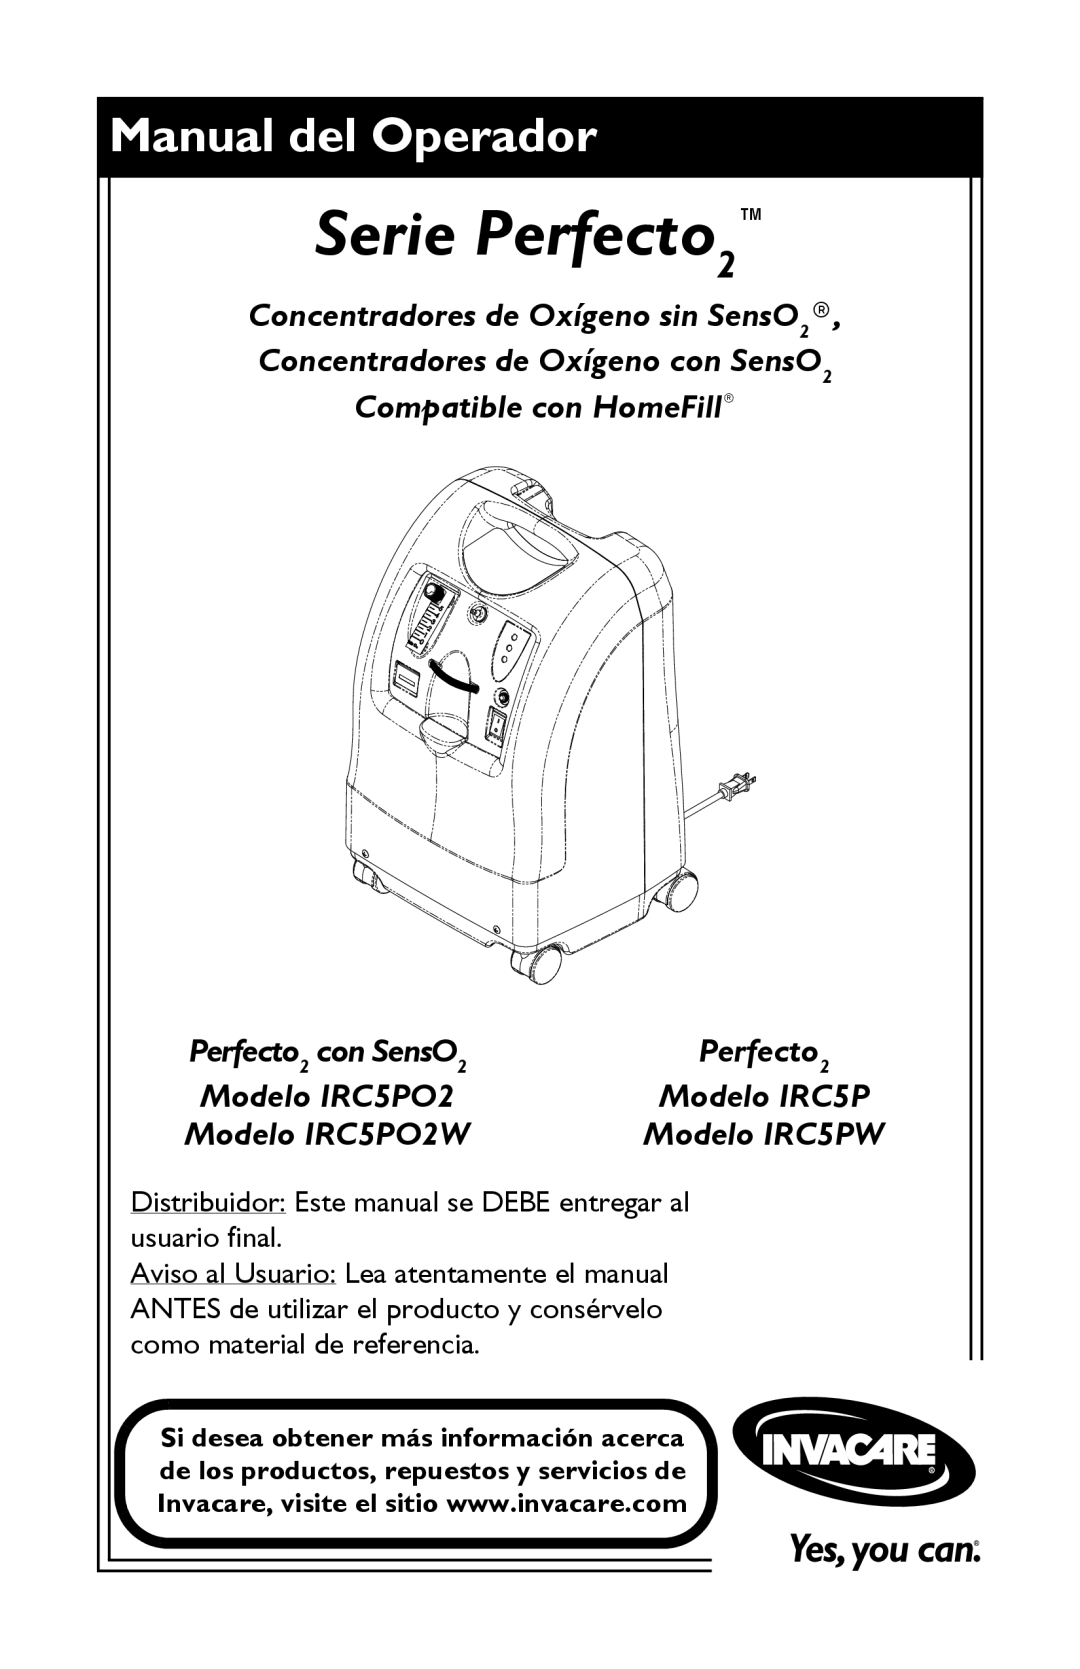 Invacare manual Serie Perfecto2, Manual del Operador, Modelo IRC5PO2W, Modelo IRC5PW, Perfecto 2 con SensO 